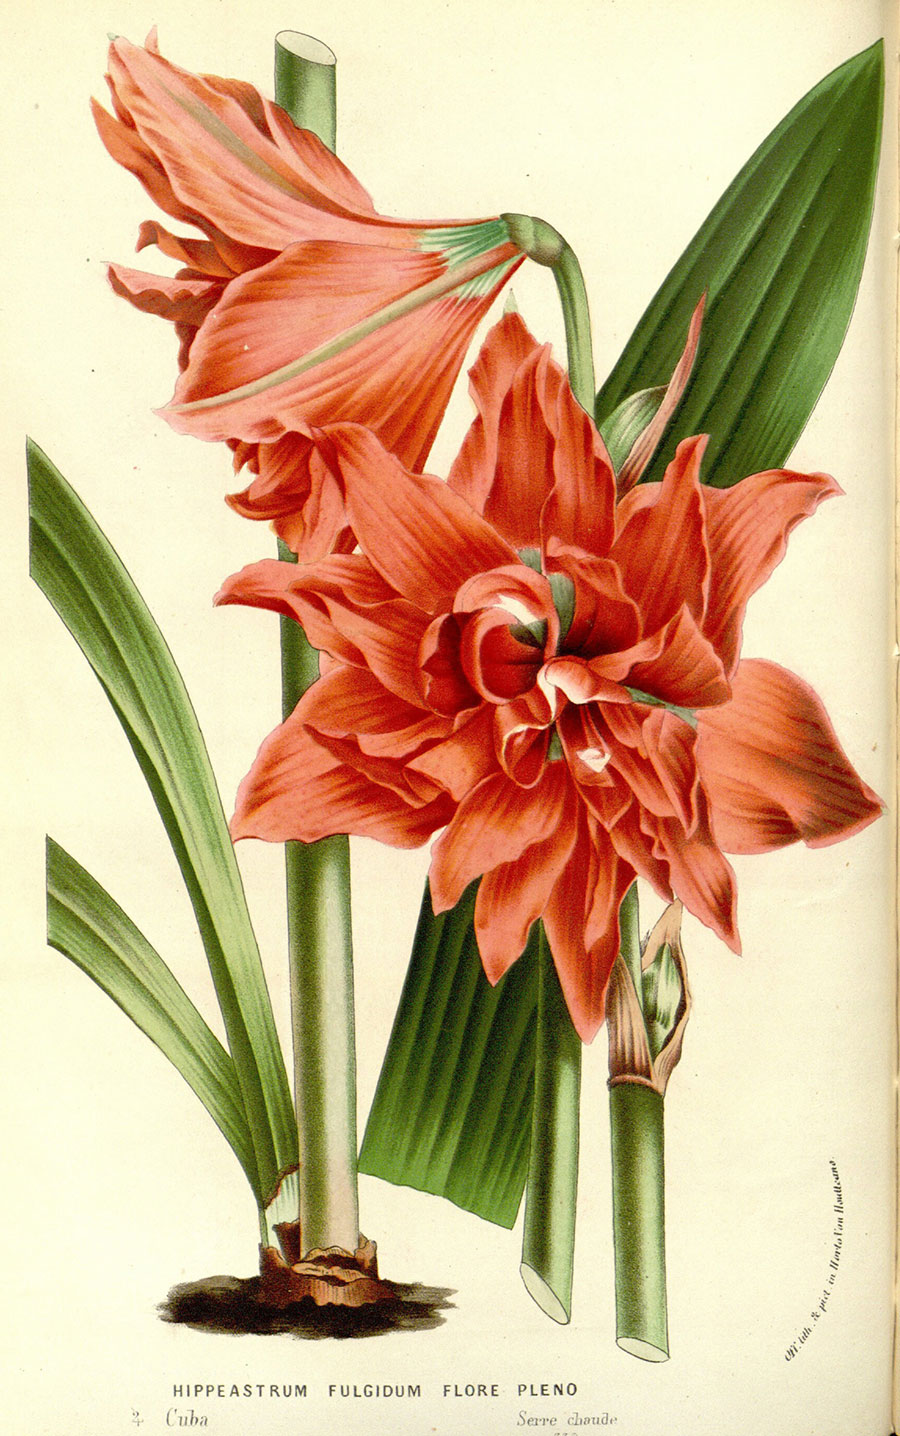 欧式植物标本画 花卉标本装饰画 朱顶红 图片素材下载